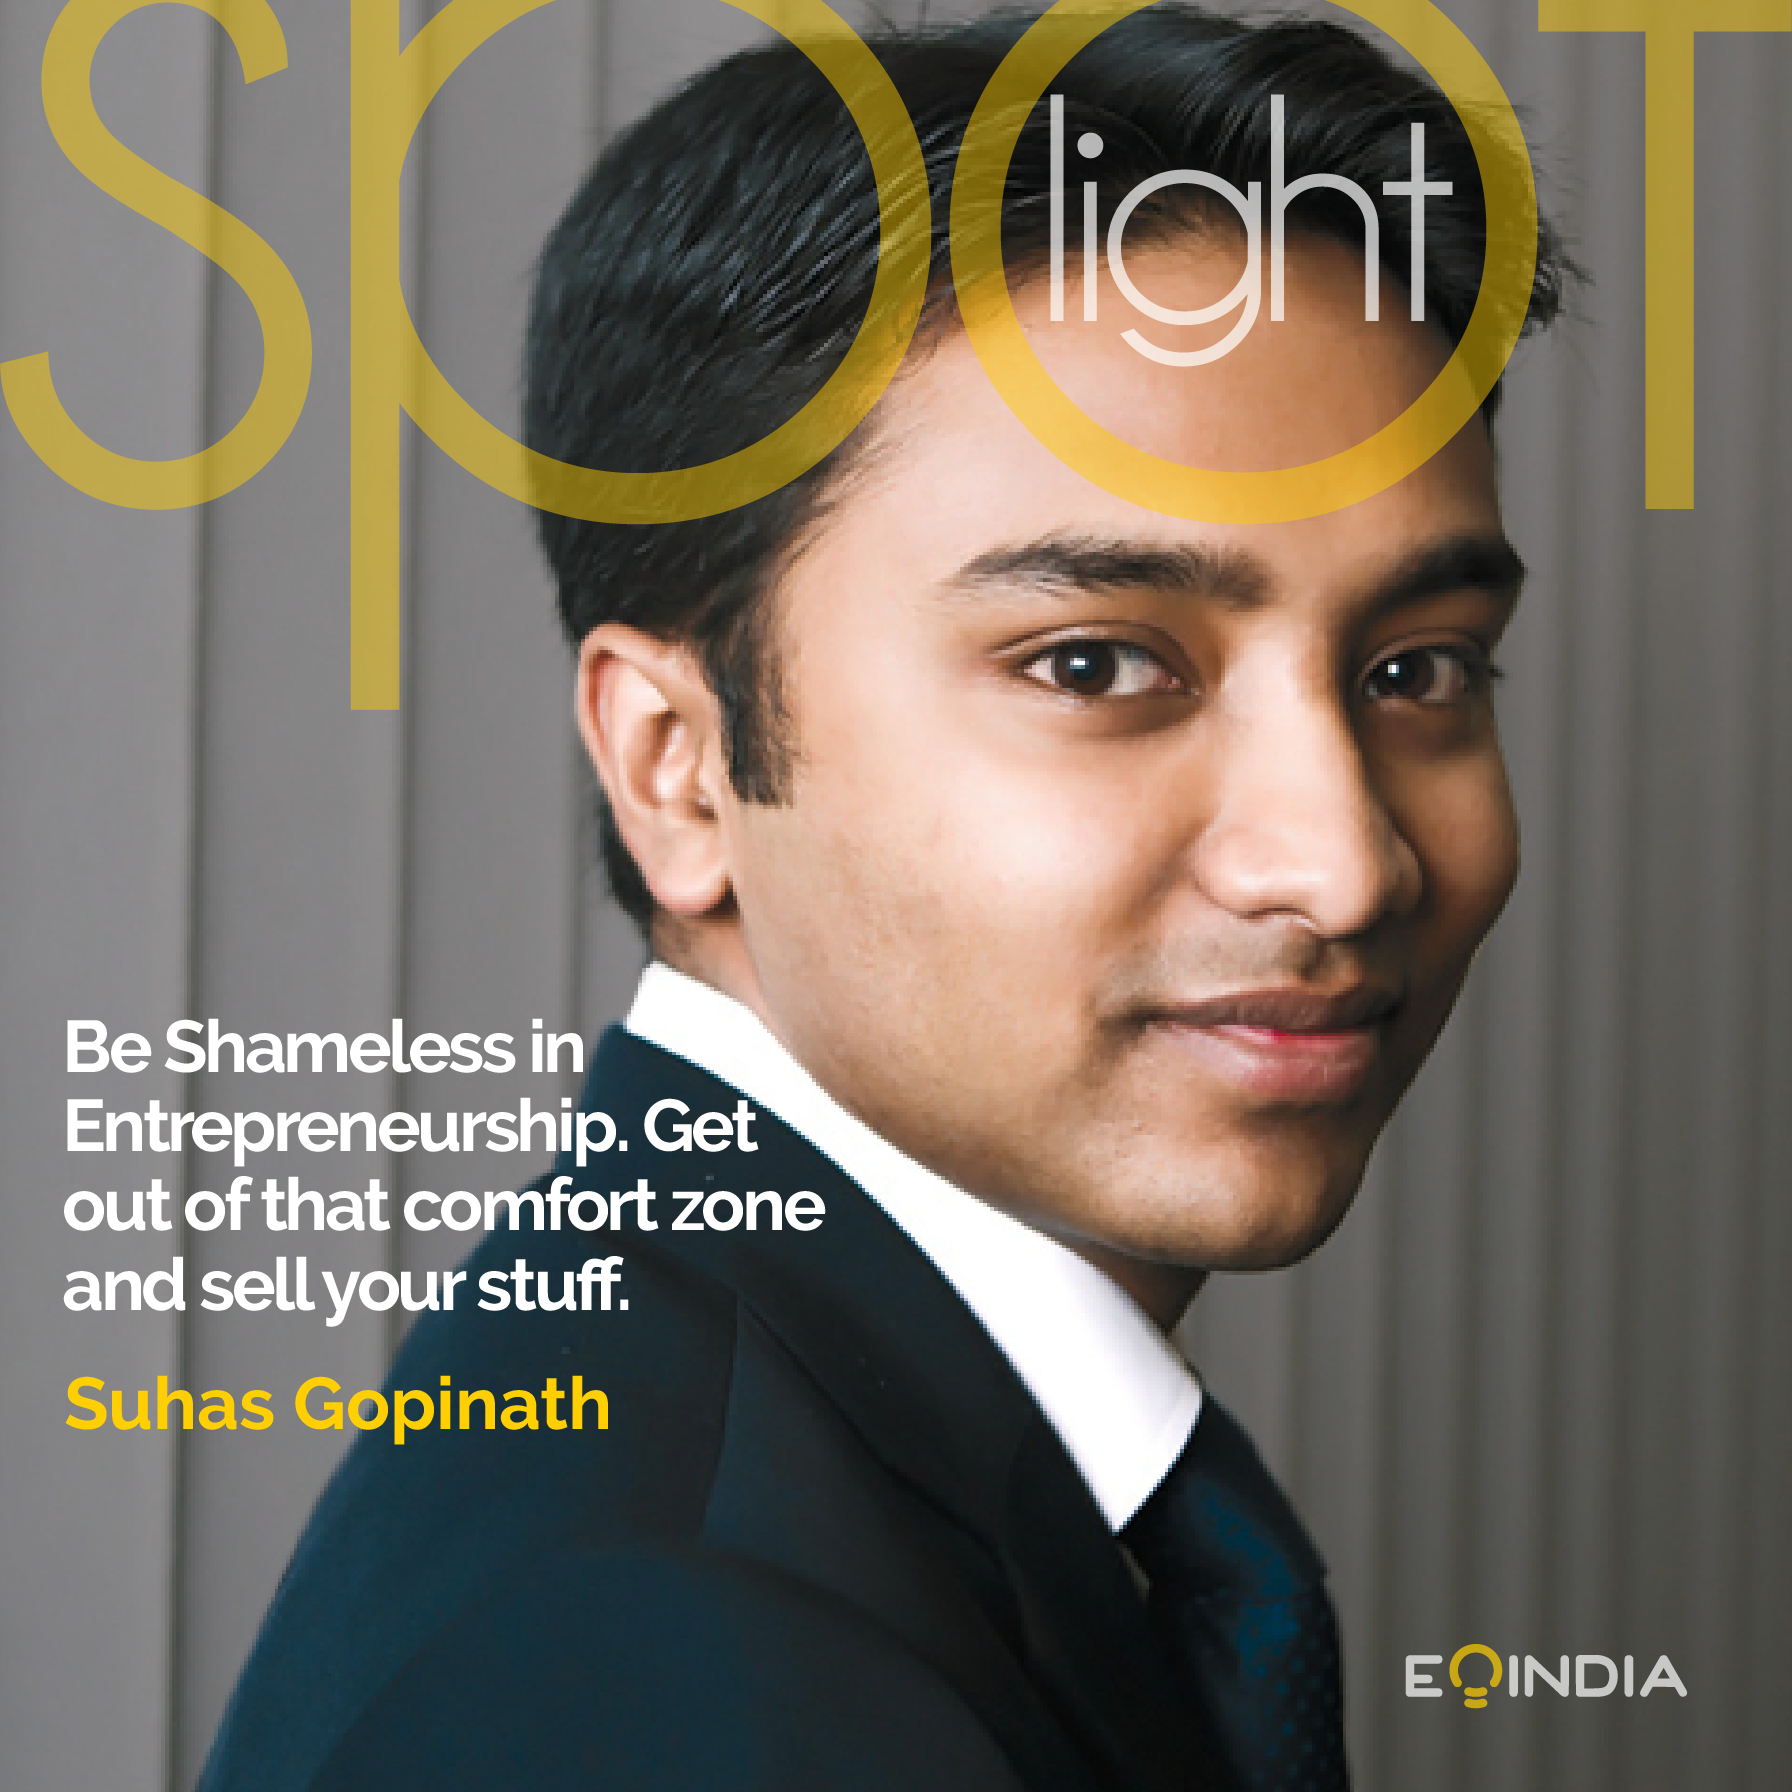 EOI Spotlight - Suhas Gopinath